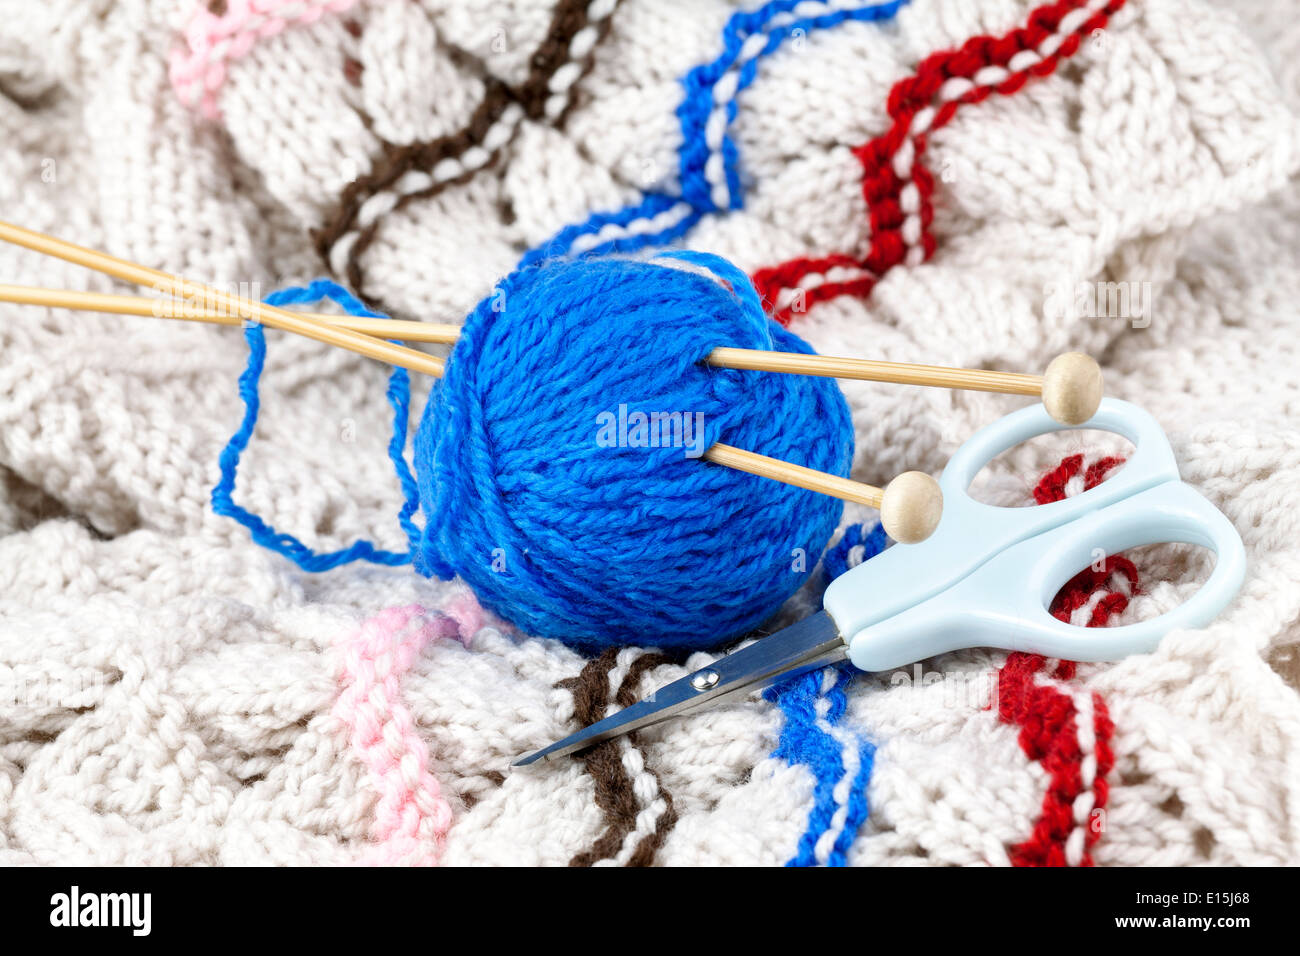 La bola de hilo azul con aguja de tejer y tijeras Foto de stock